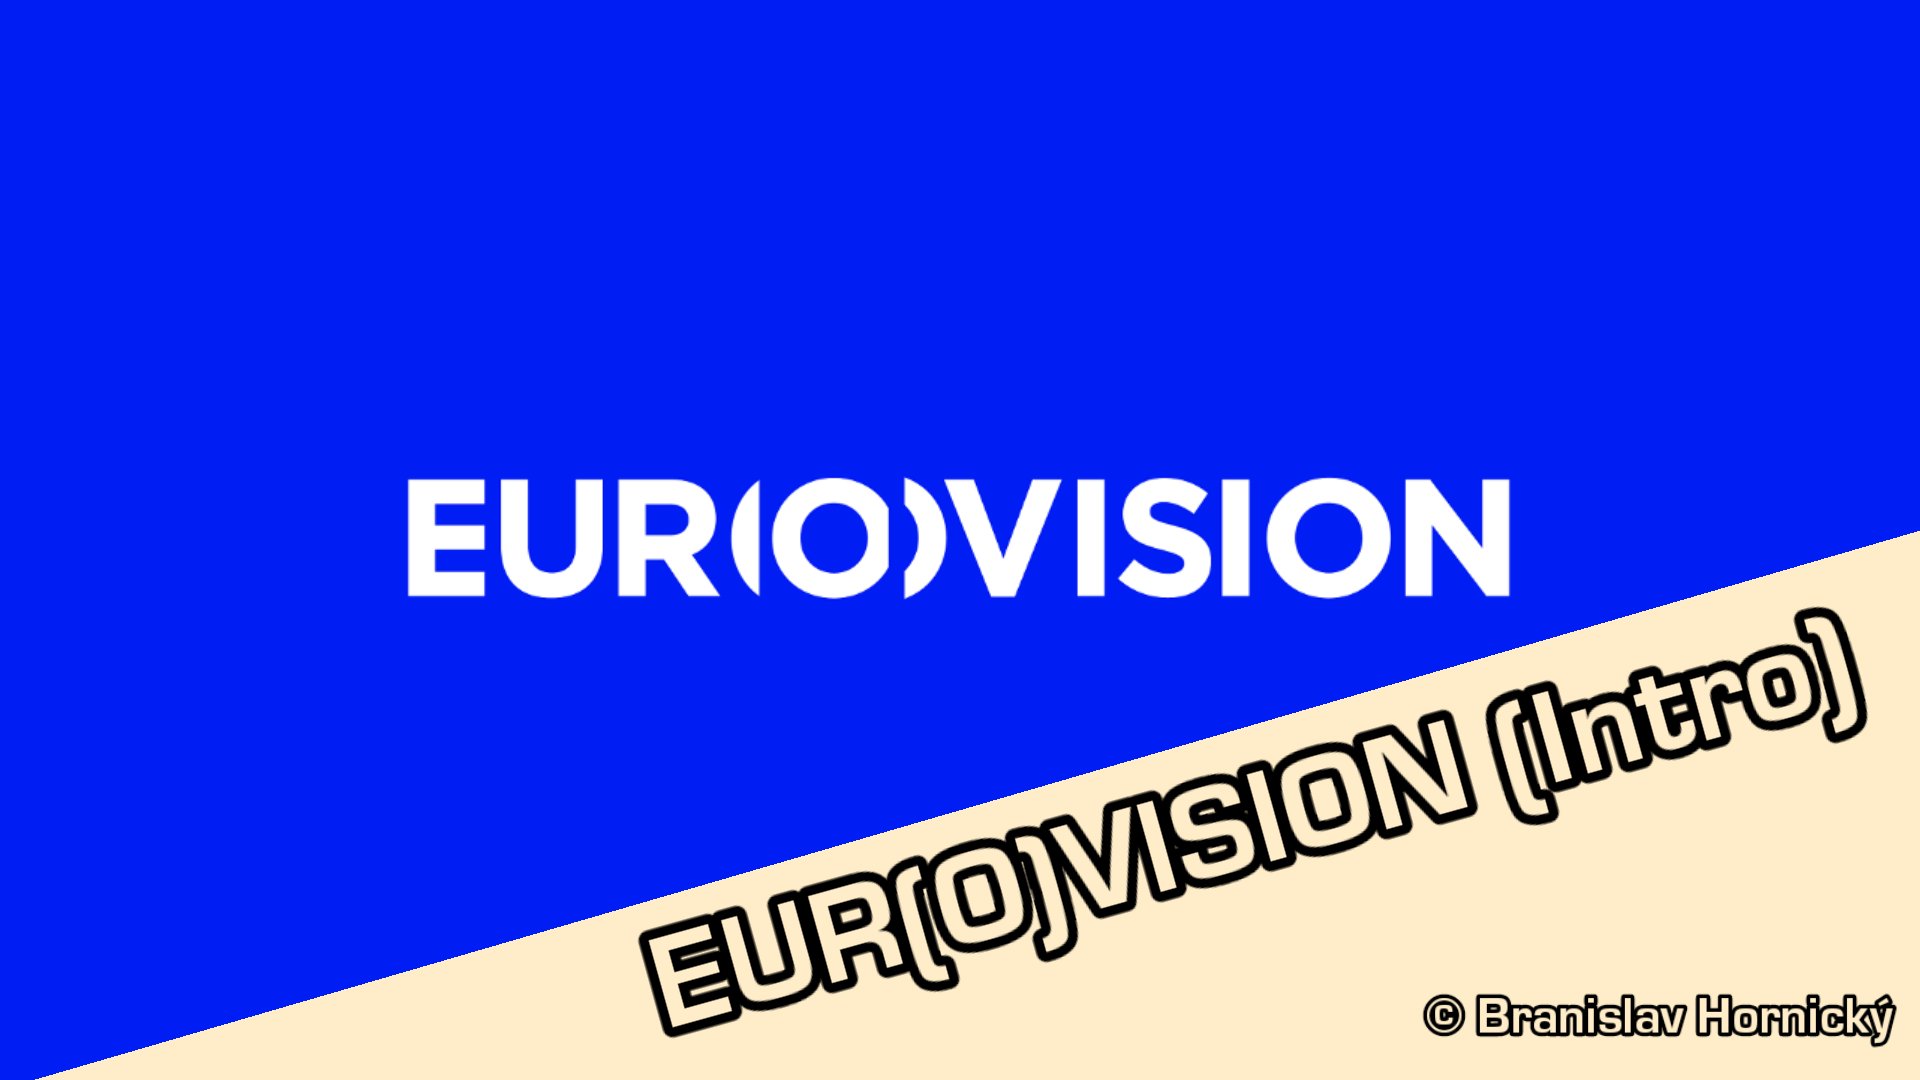 EUROVISION (Intro)